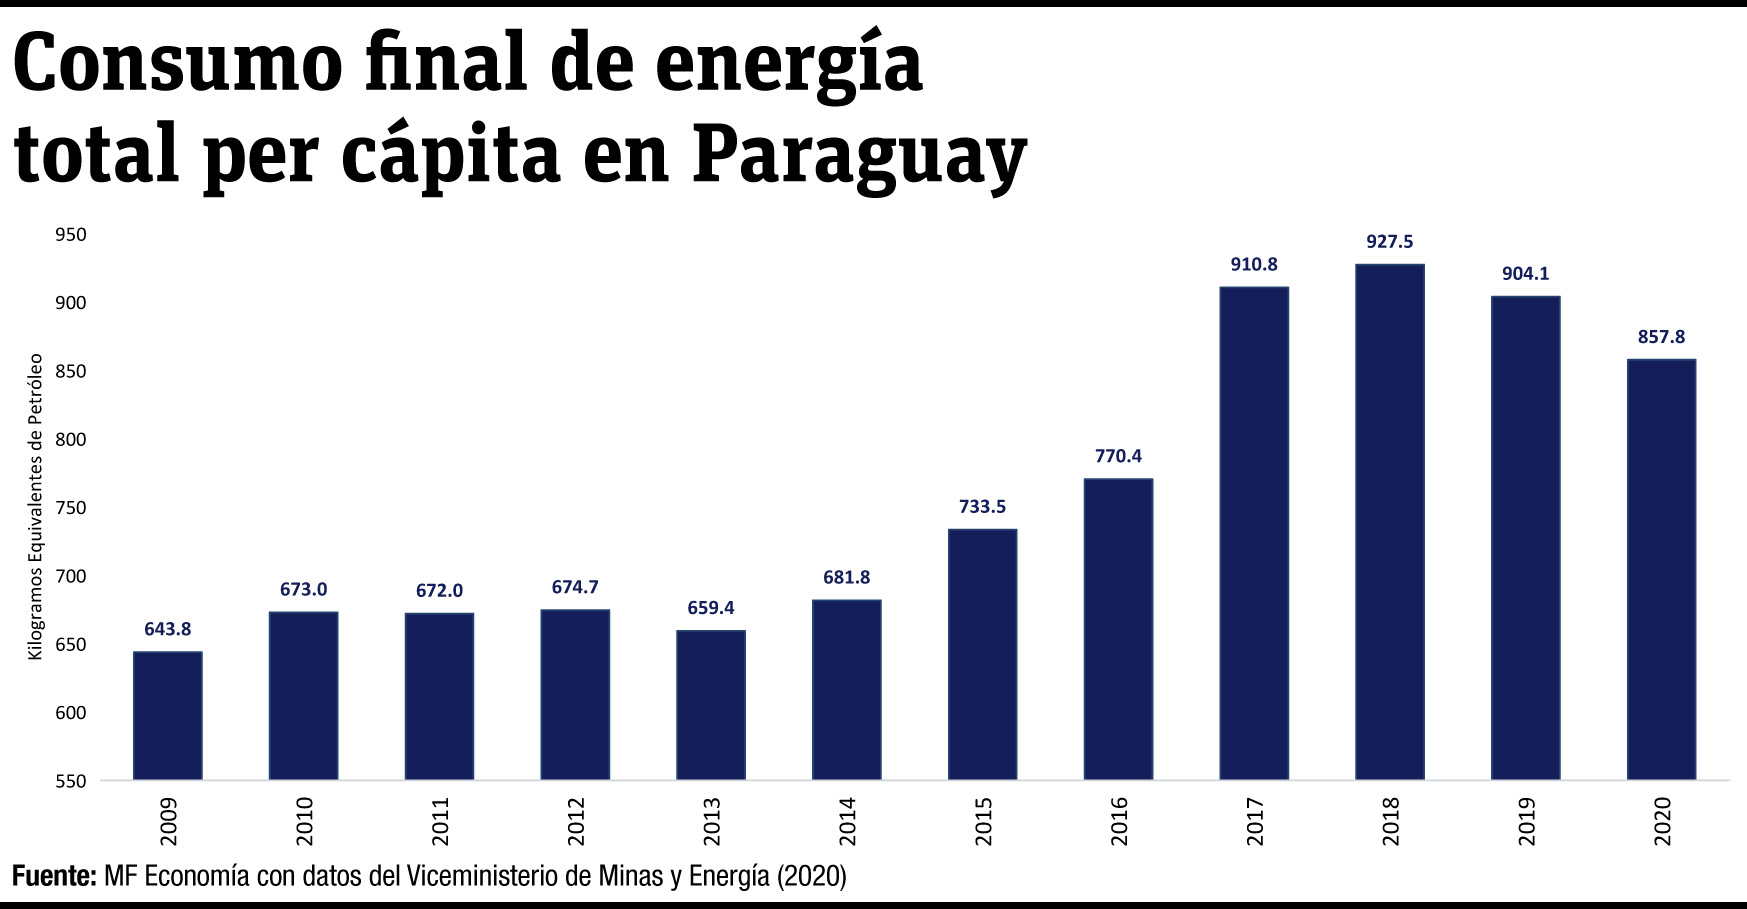 CONSUMO FINAL DE ENERGÍA TOTAL PER CÁPITA EN PARAGUAY